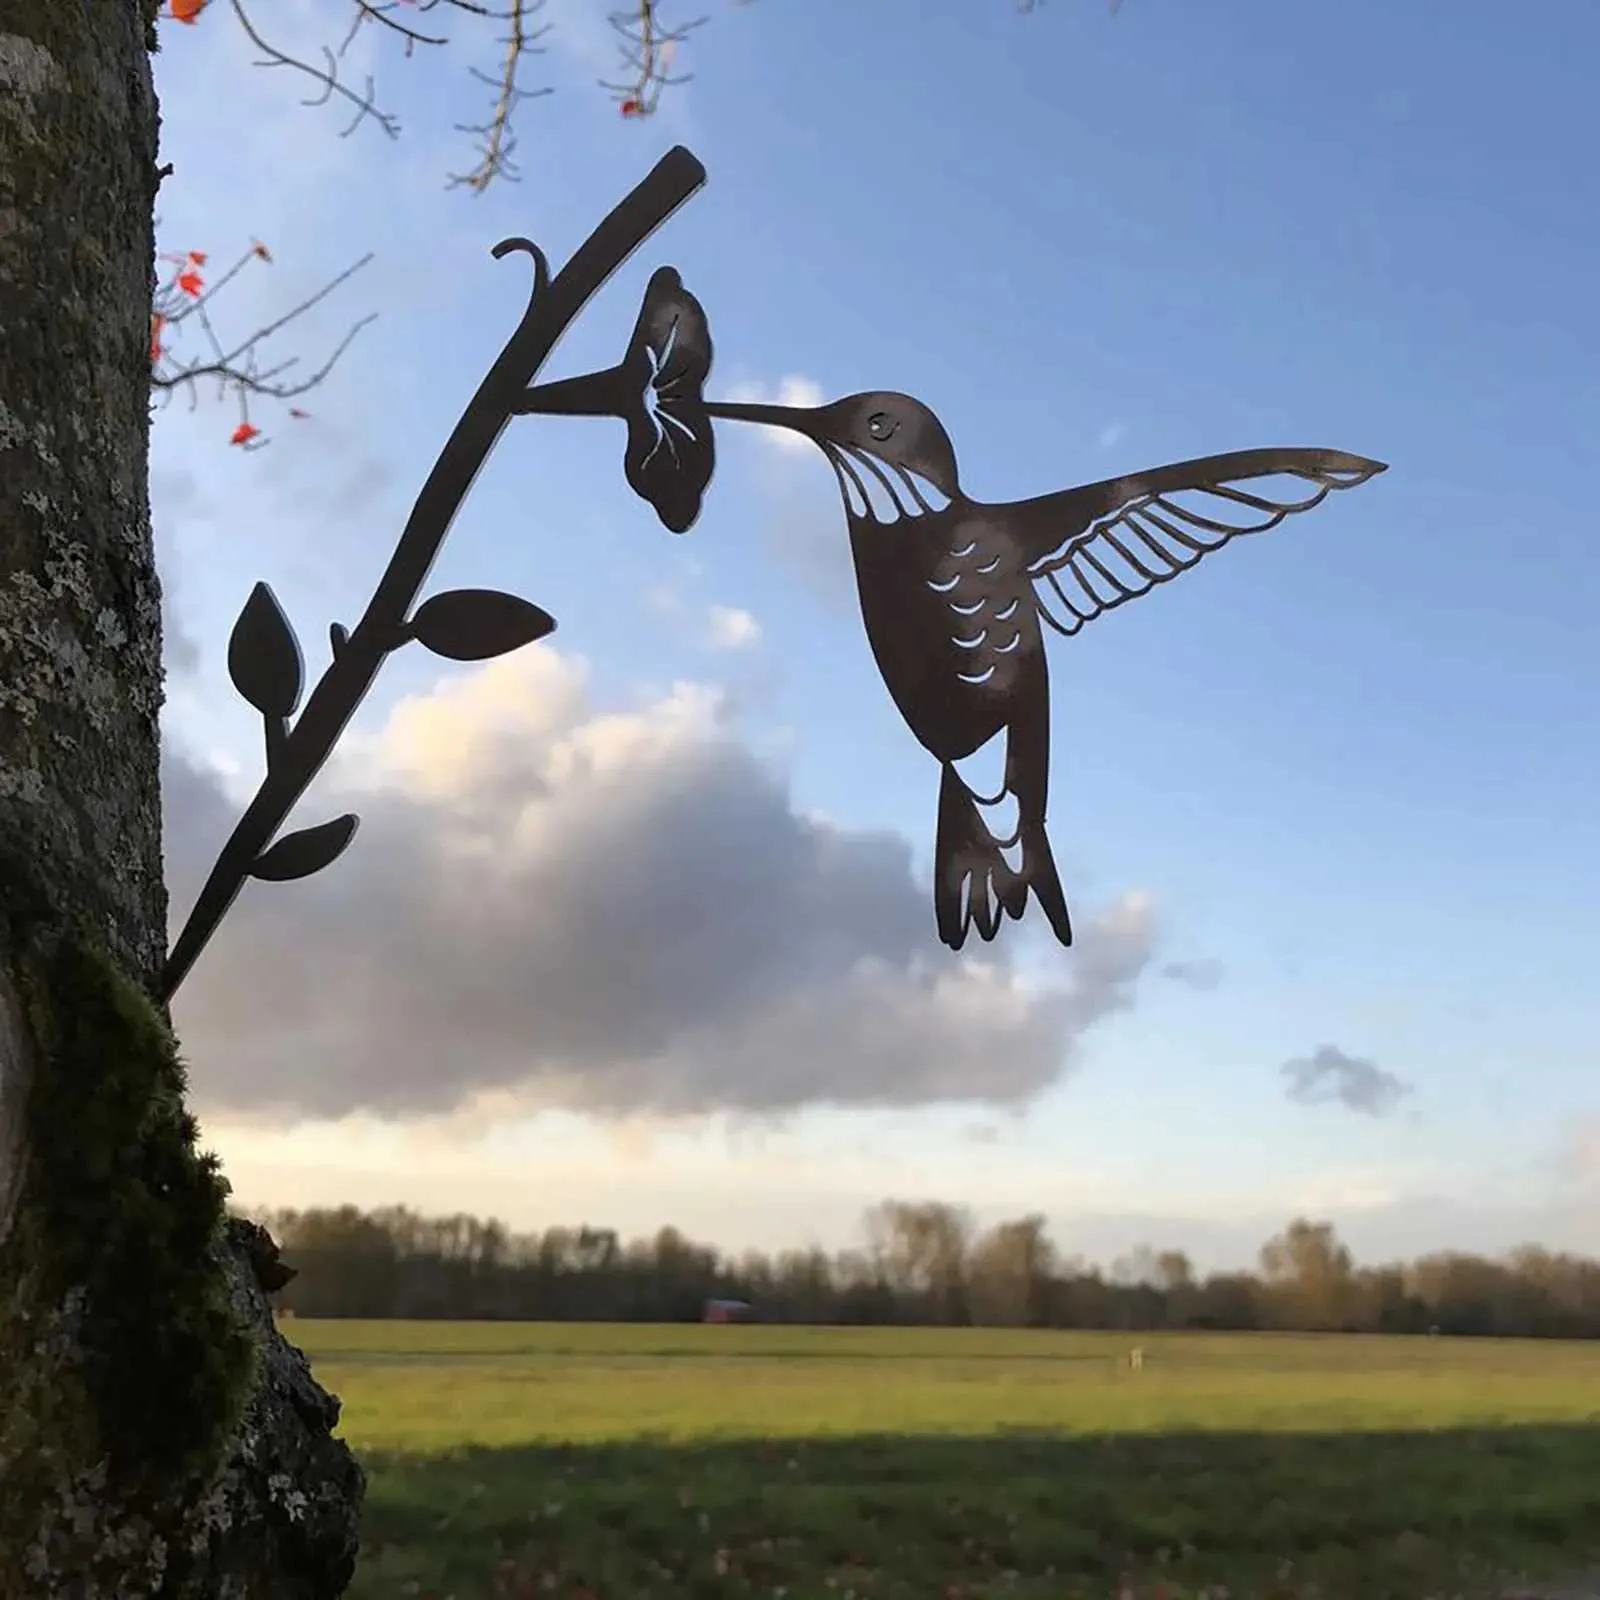 Dekoracje ogrodowe hummingbird metalowy ptak dekoracja sztuki na podwórko lub drzewo metalowa sztuka symulacja ptaki sylwetki ozdoby dekoracje ogrodowe